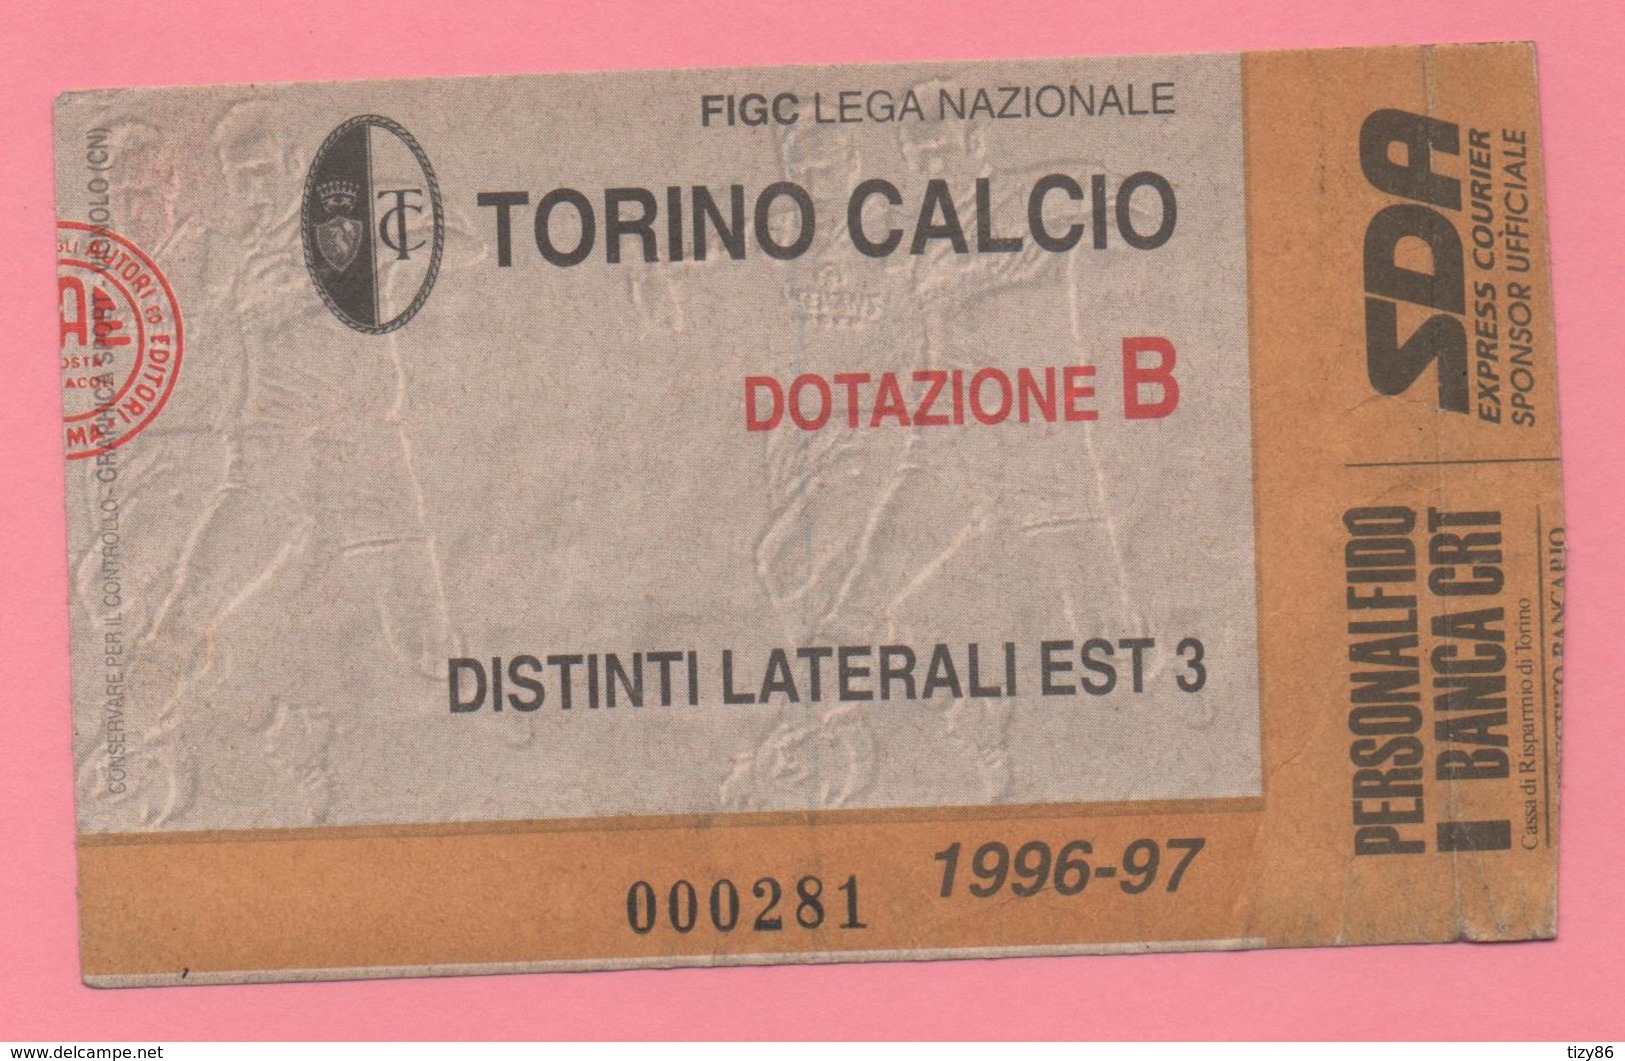 Biglietto D'ingresso Torino Calcio 1996-97 - Tickets - Vouchers